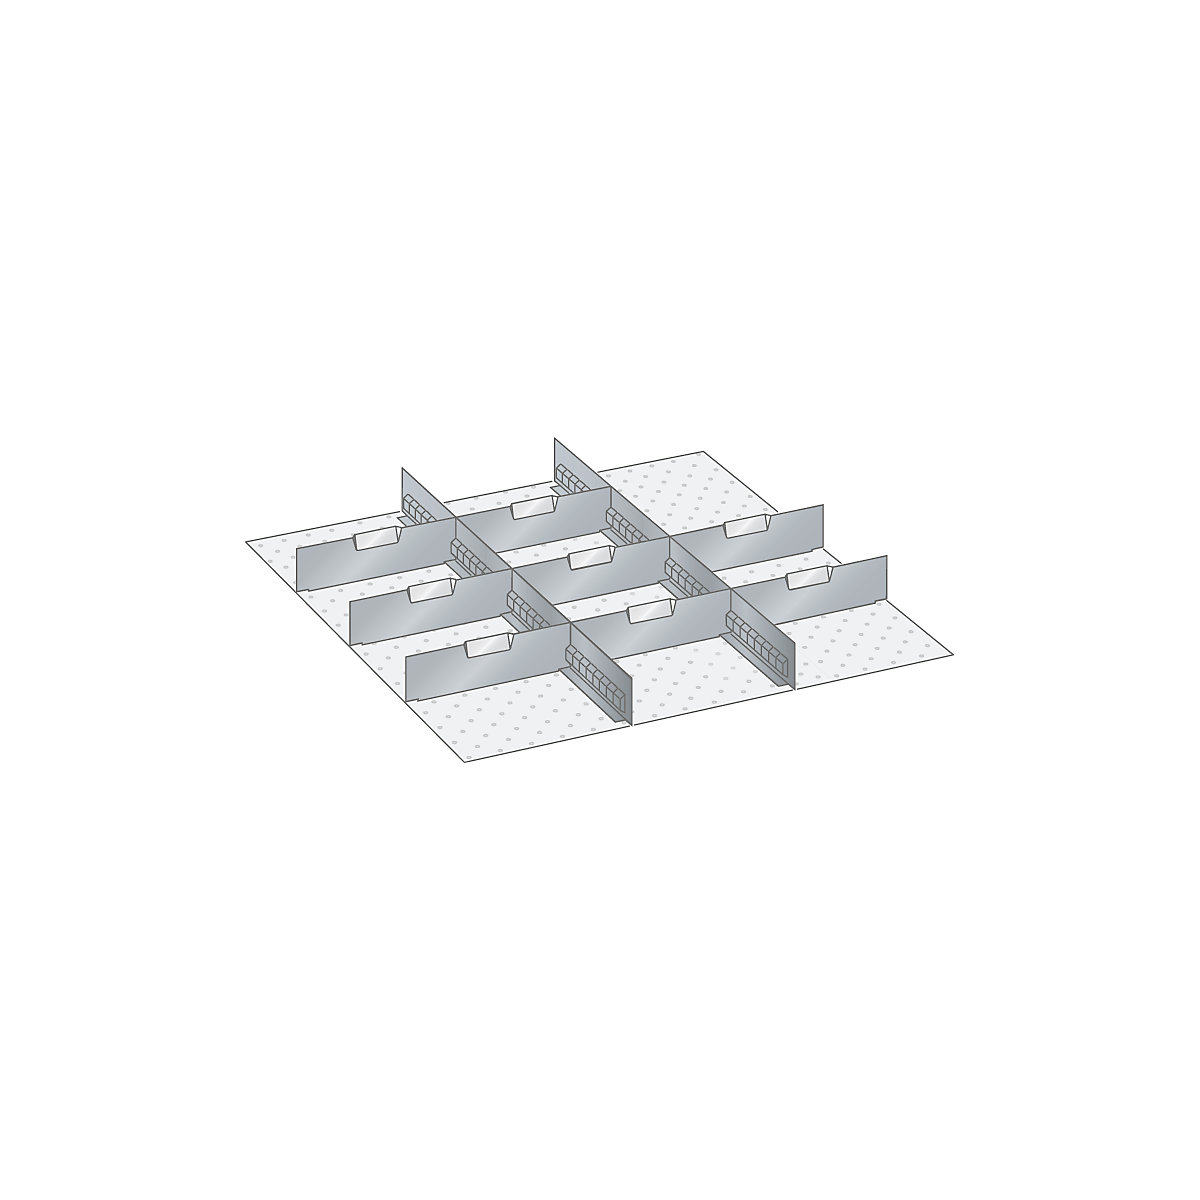 Materiaalset voor lade-indelingen – LISTA, 2 sleufwanden en 8 scheidingsschotten, 10-delig, voor fronthoogte 100, 125 mm-1